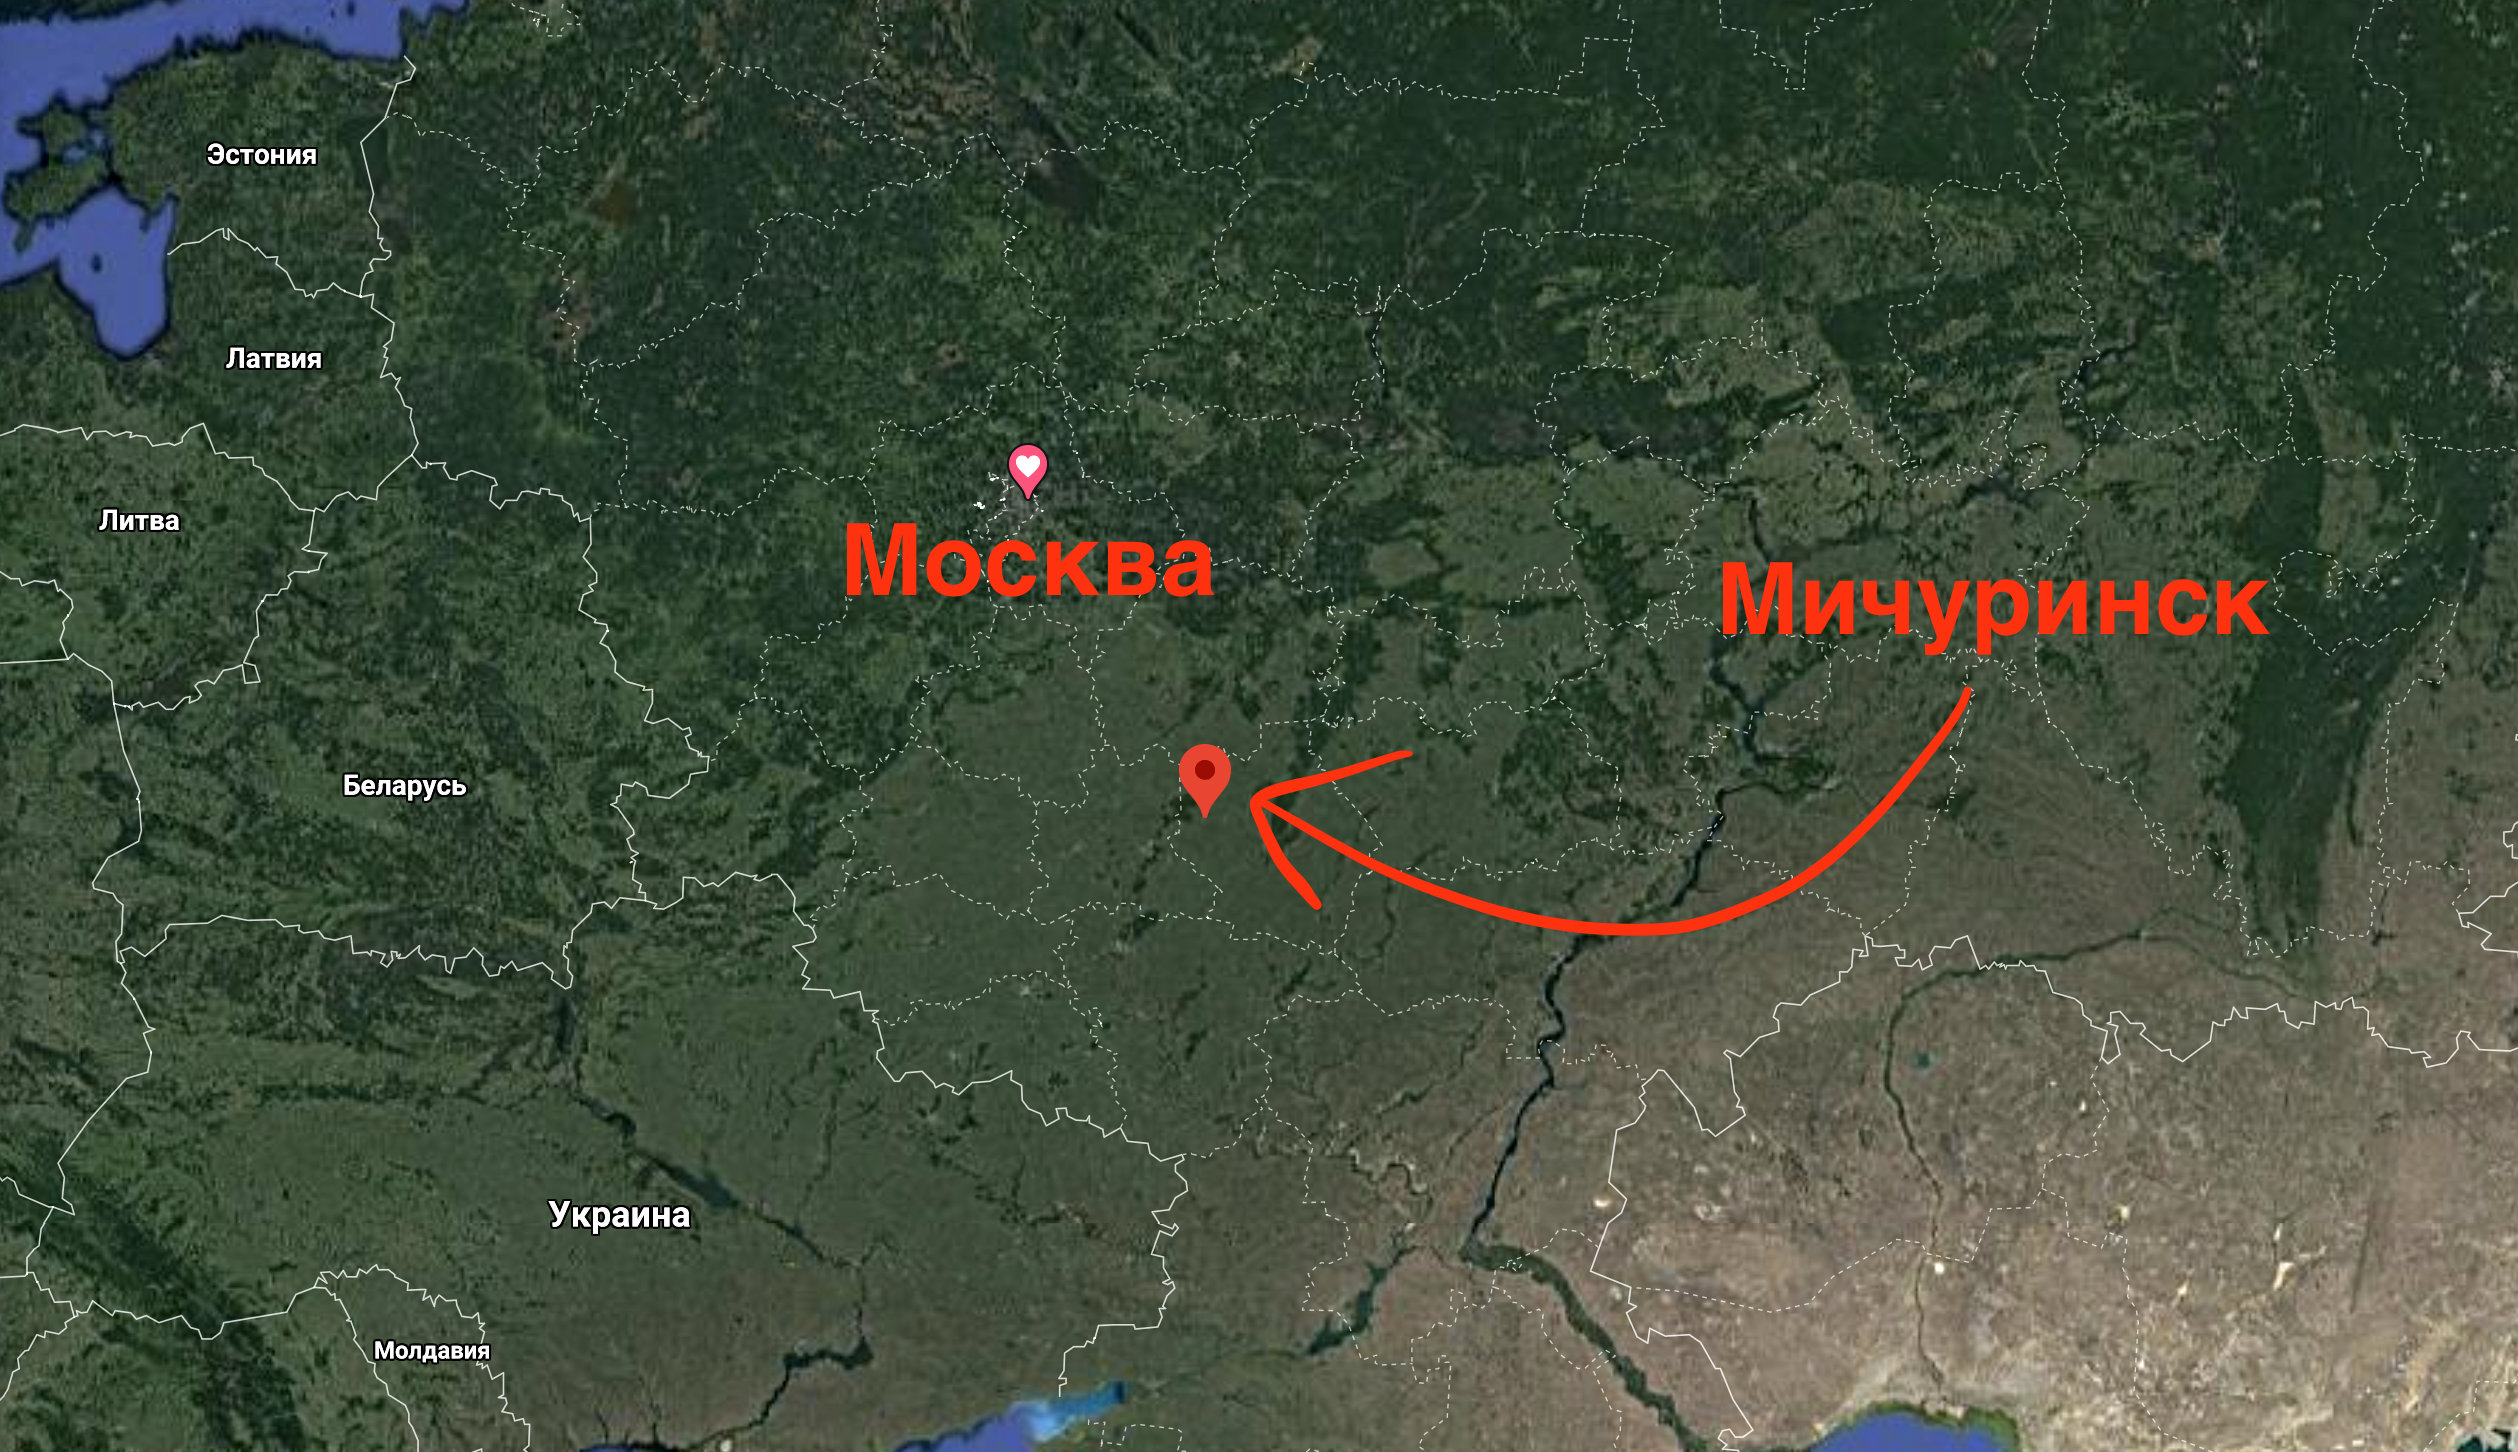 Покажи карту мичуринска. Мичуринск на карте России. Карта России Мичуринск на карте. Город Мичуринск на карте. Где находится Мичуринск на карте.